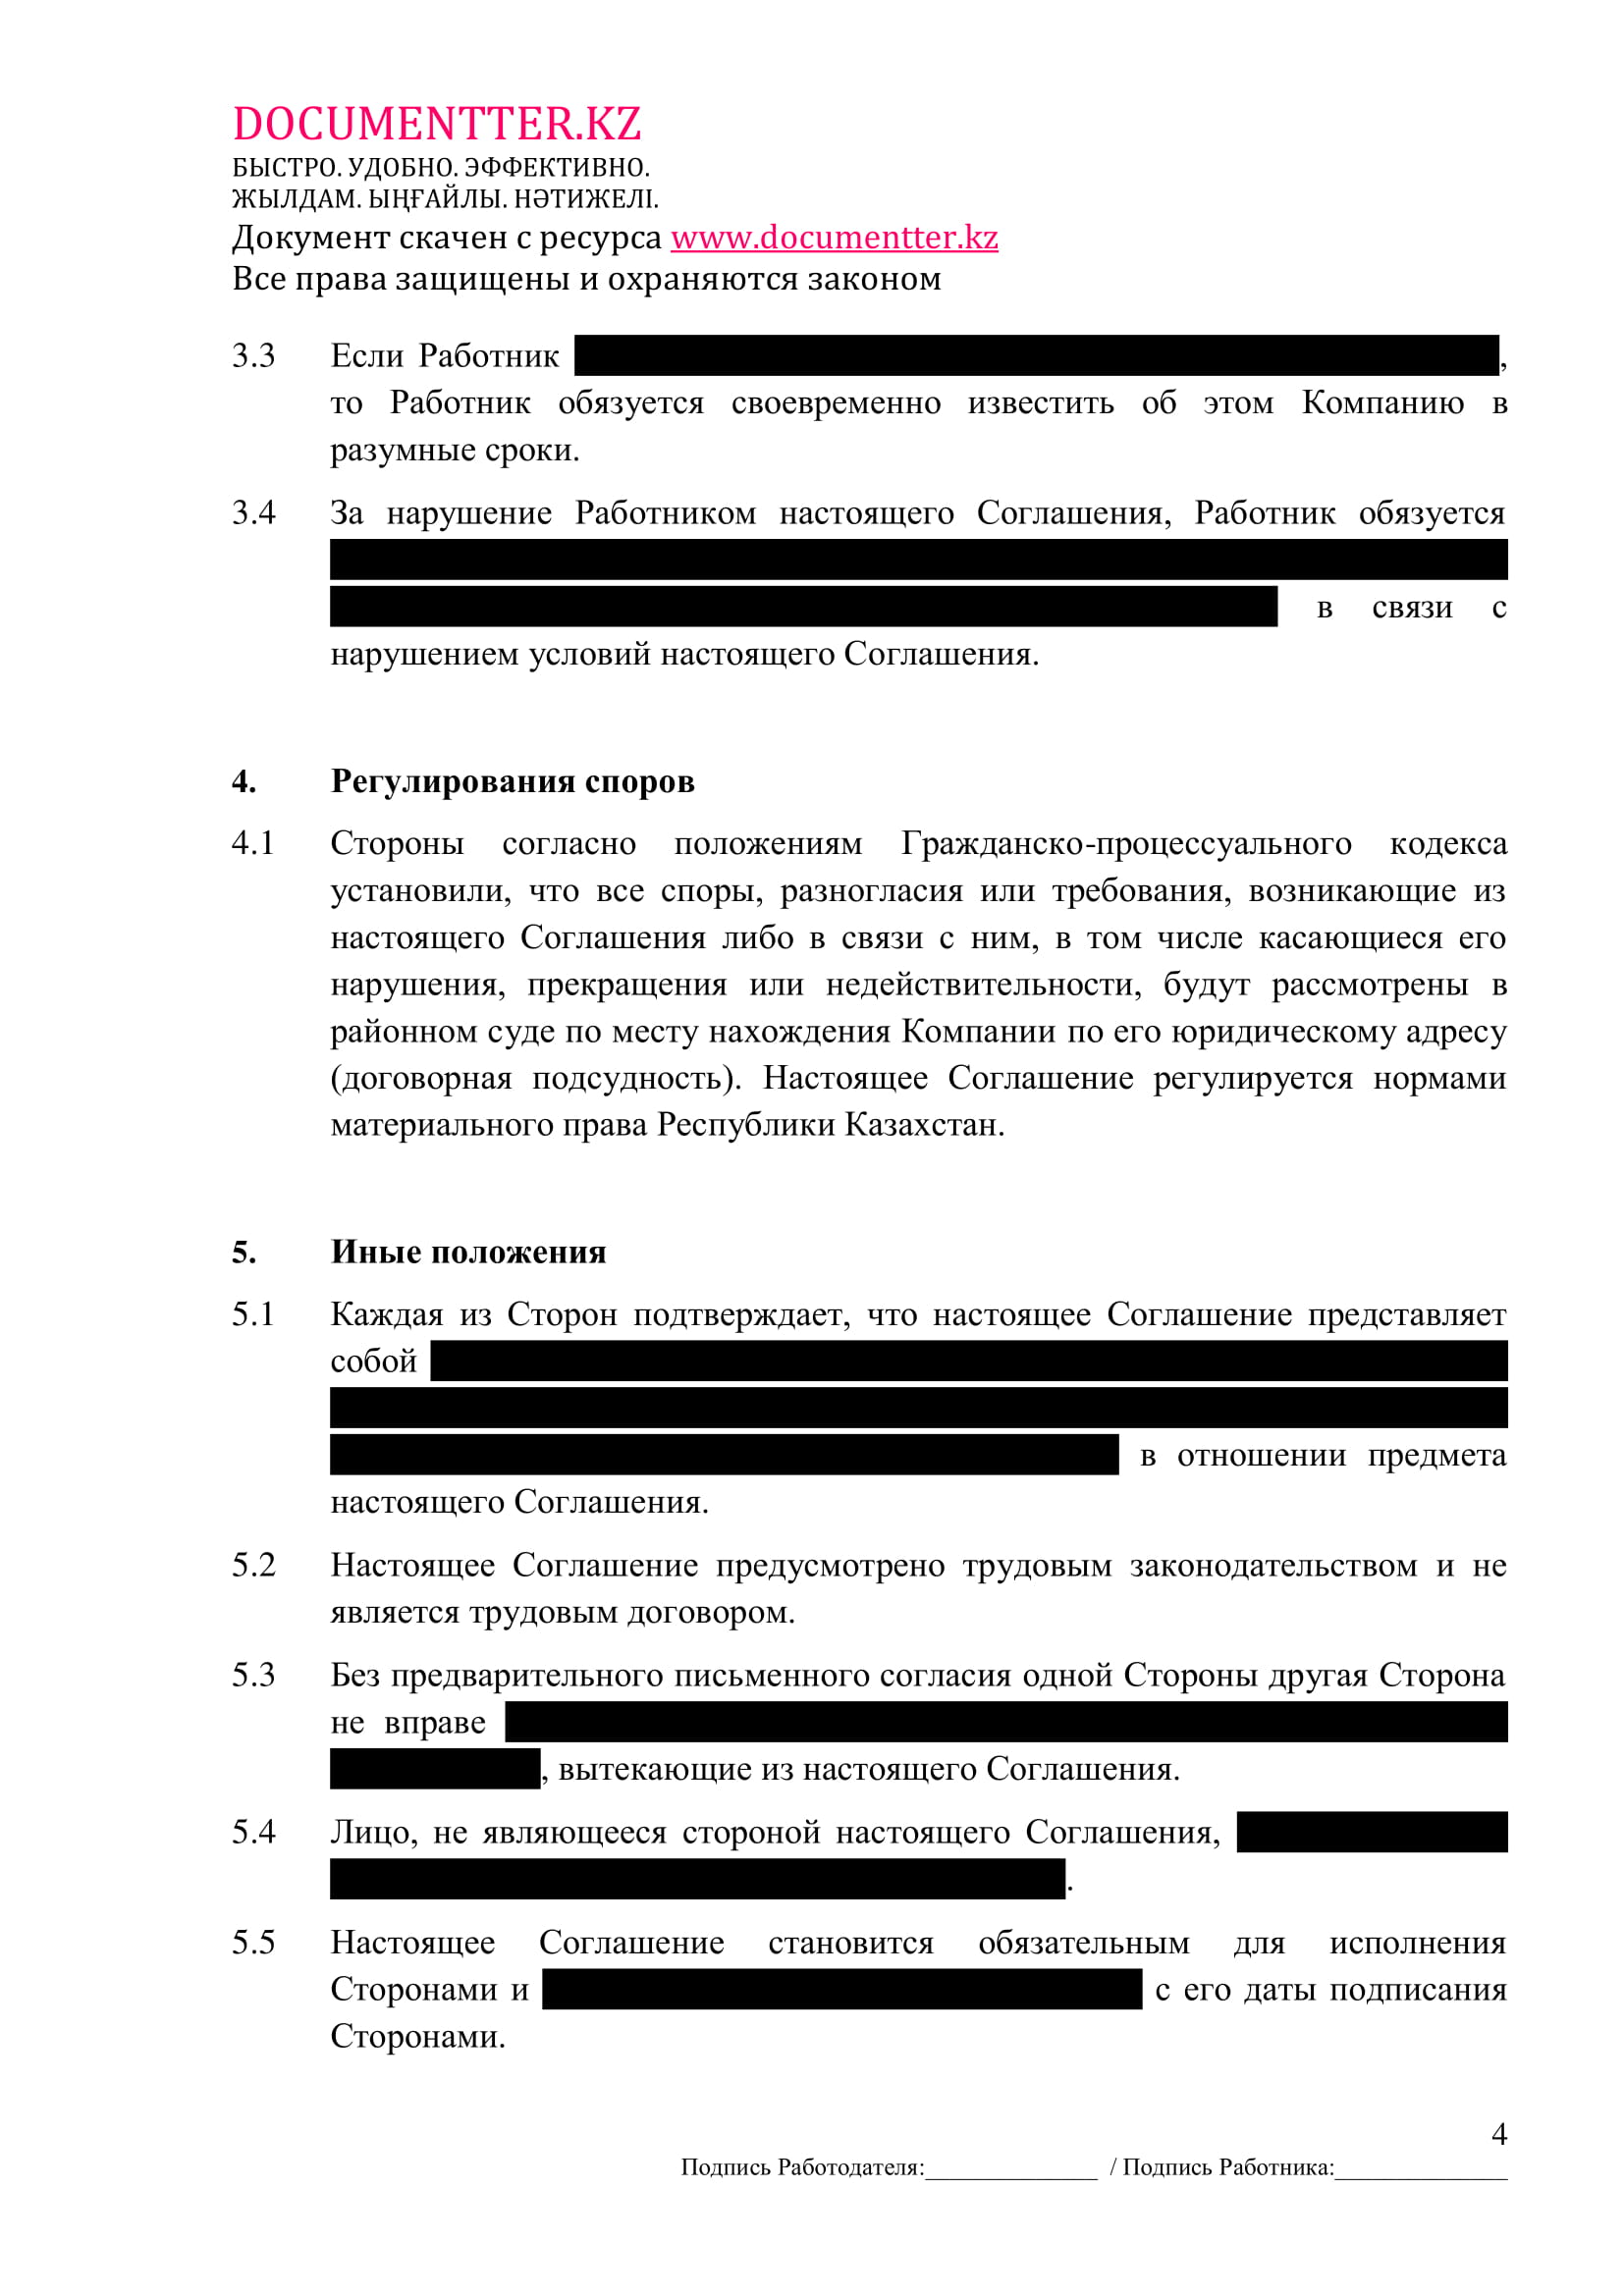 Соглашение о неконкуренции | documentterkz.com в Казахстане